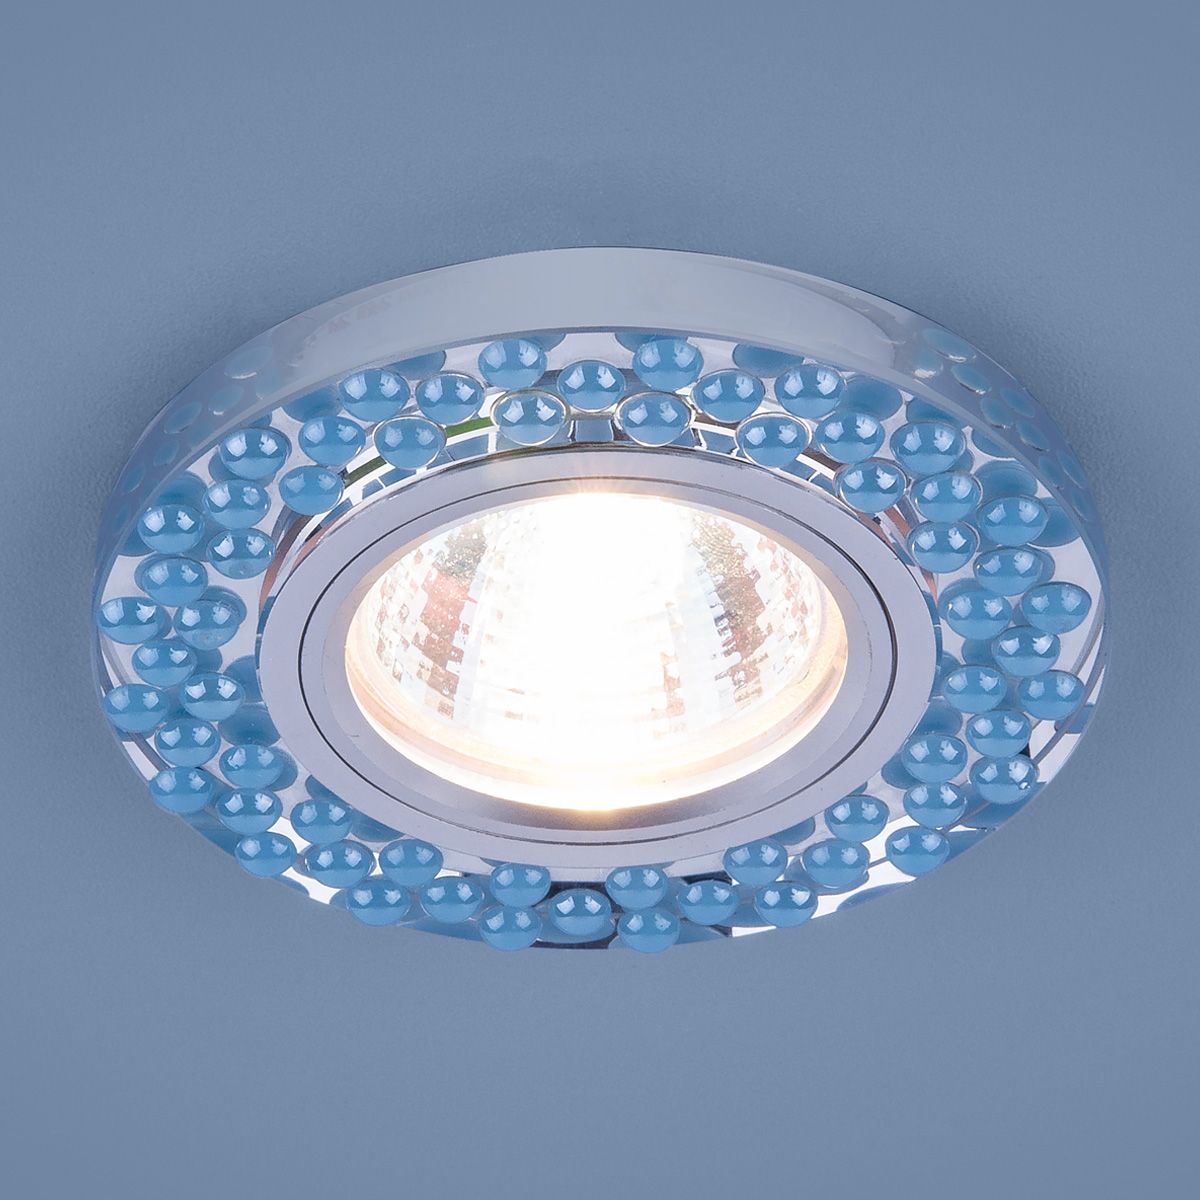 Встраиваемый точечный светильник с LED подсветкой 2194 MR16 SL/BL зеркальный/голубой